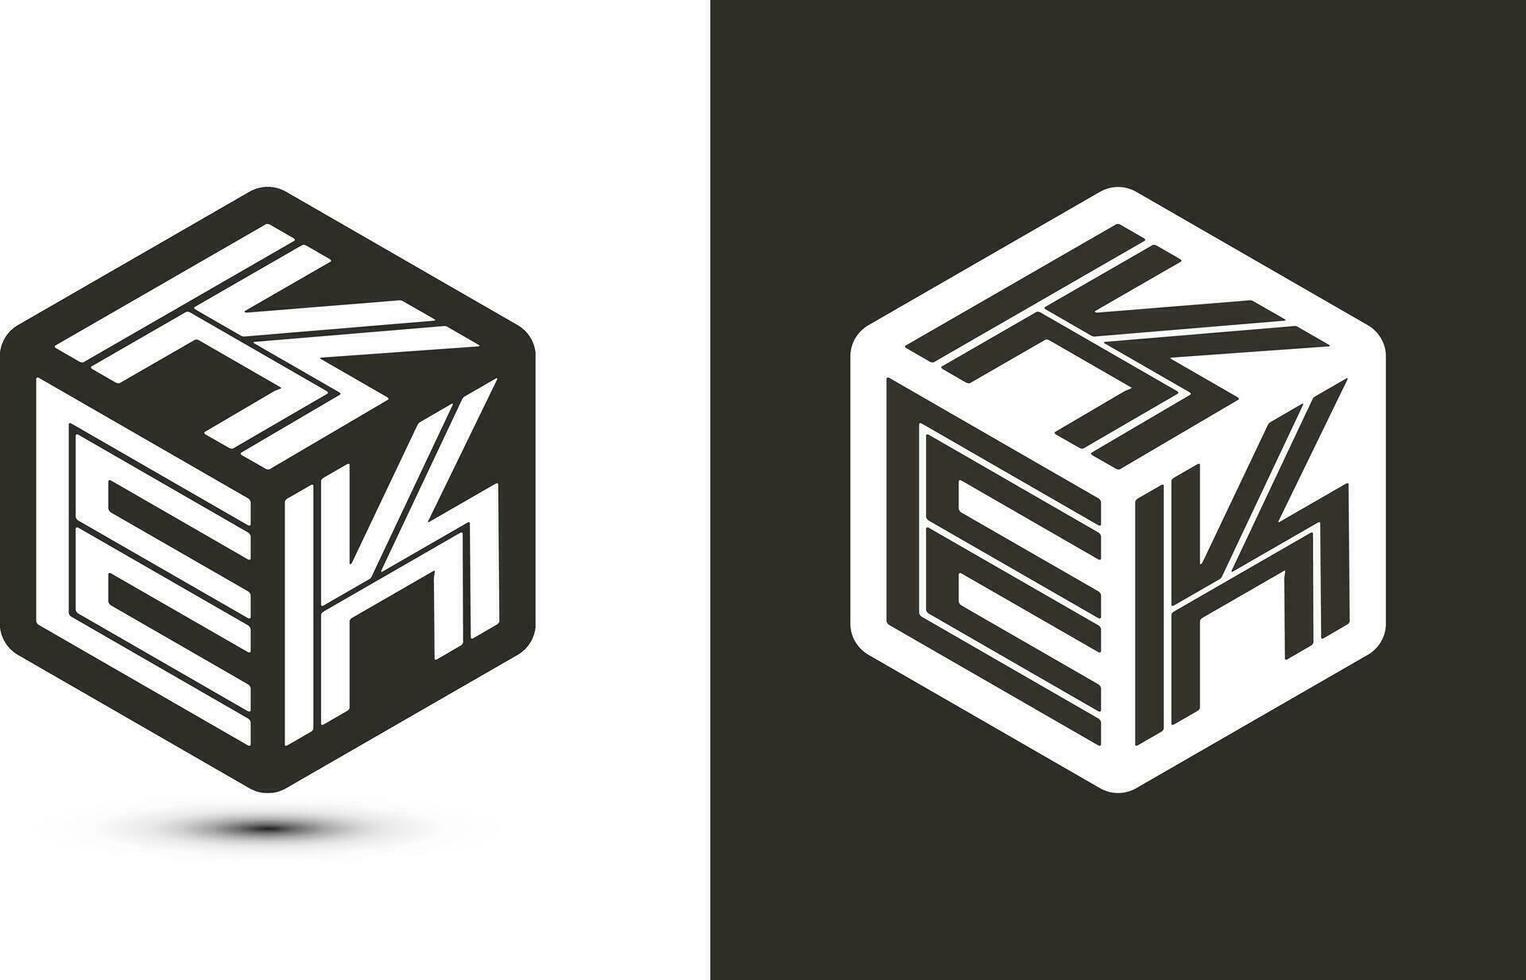 KEK letter logo design with illustrator cube logo, vector logo modern alphabet font overlap style.